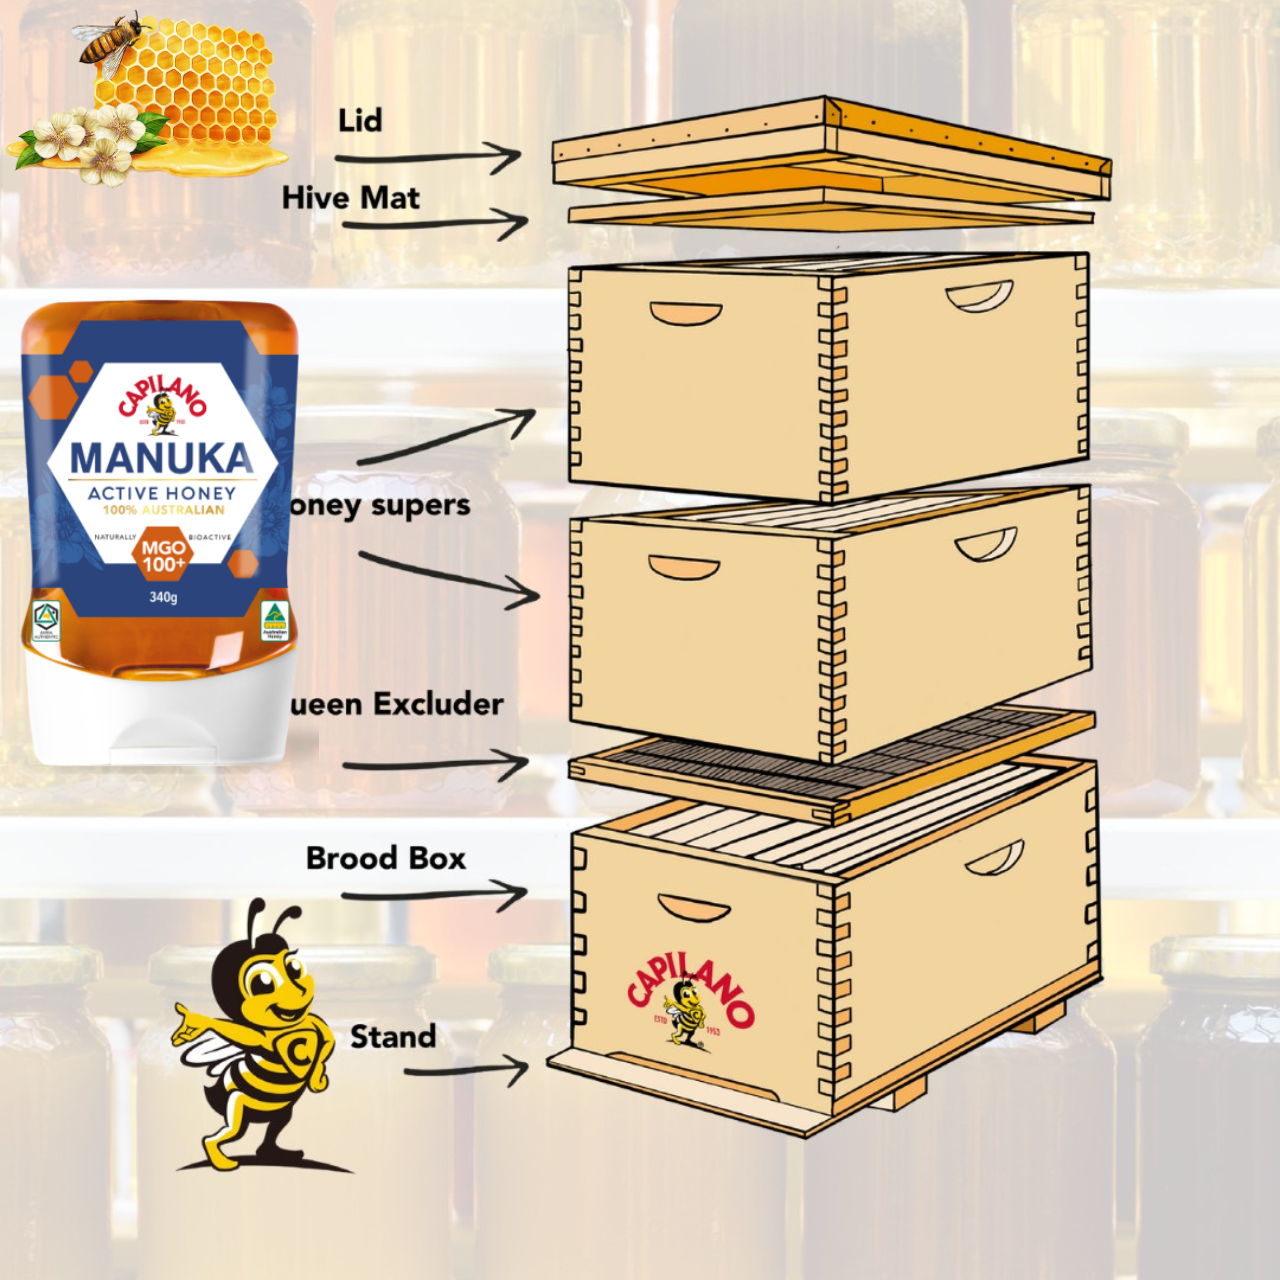 Mật ong hoa Manuka Capilano Active Honey MGO 100+ tăng sức đề kháng, giảm ho, viên họng, dưỡng ẩm da và môi cang mềm mịn (340g) - Massel Official